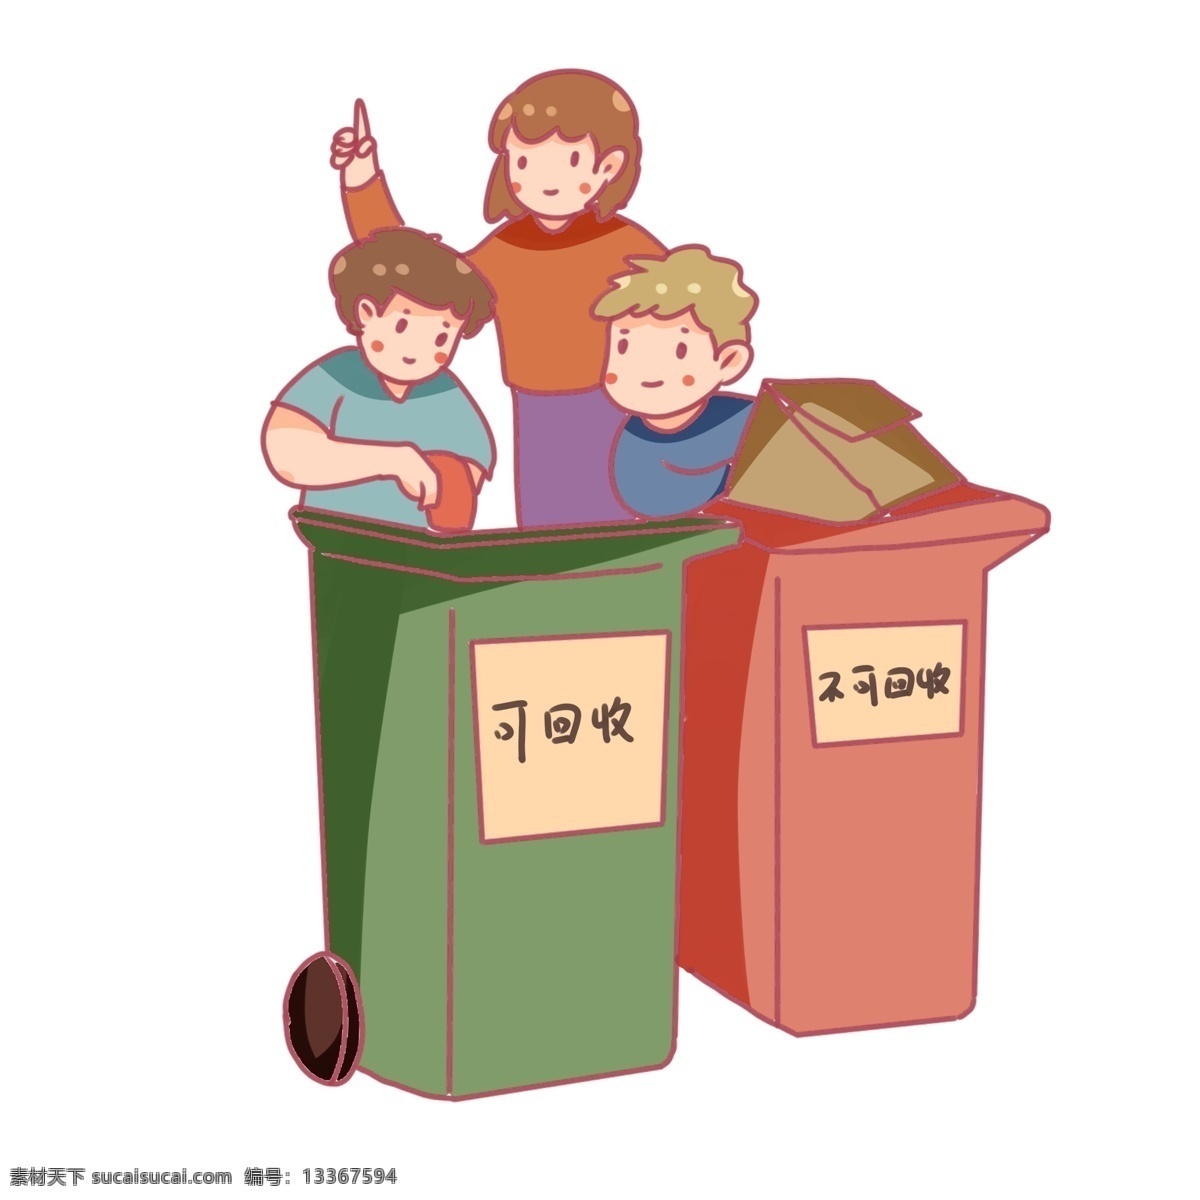 世界 地球日 环保 垃圾 分类 世界地球日 垃圾分类 可回收垃圾 不可回收垃圾 环保教育 小朋友 纸箱 垃圾箱